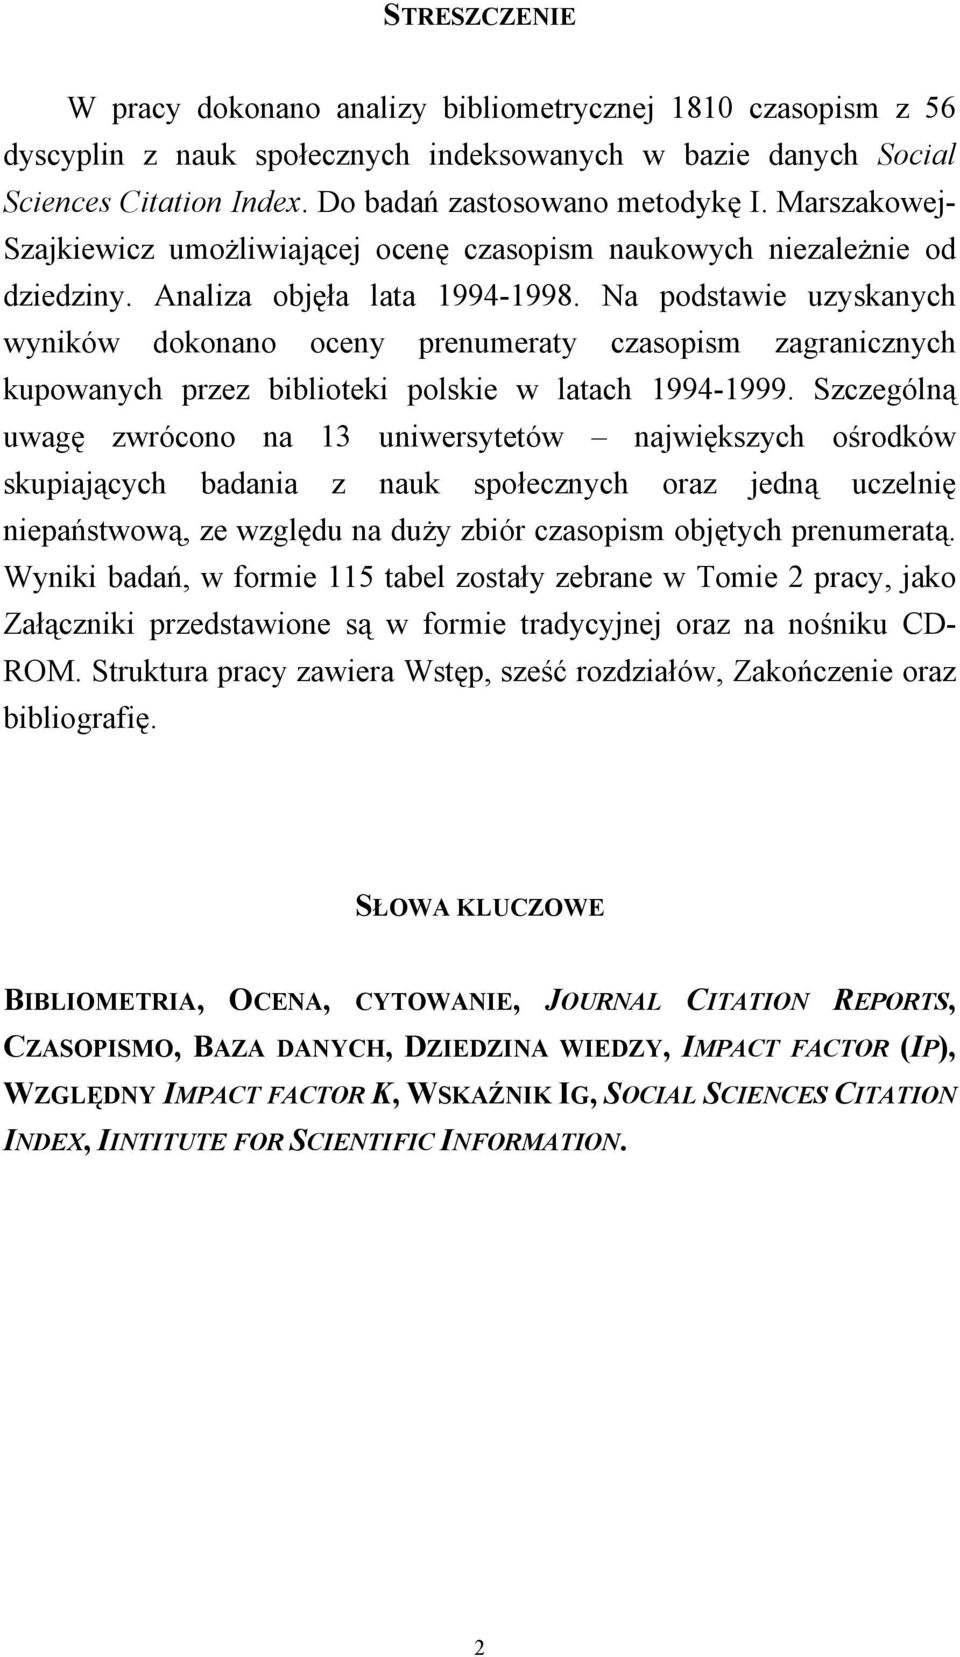 Na podstawie uzyskanych wyników dokonano oceny prenumeraty czasopism zagranicznych kupowanych przez biblioteki polskie w latach 1994-1999.